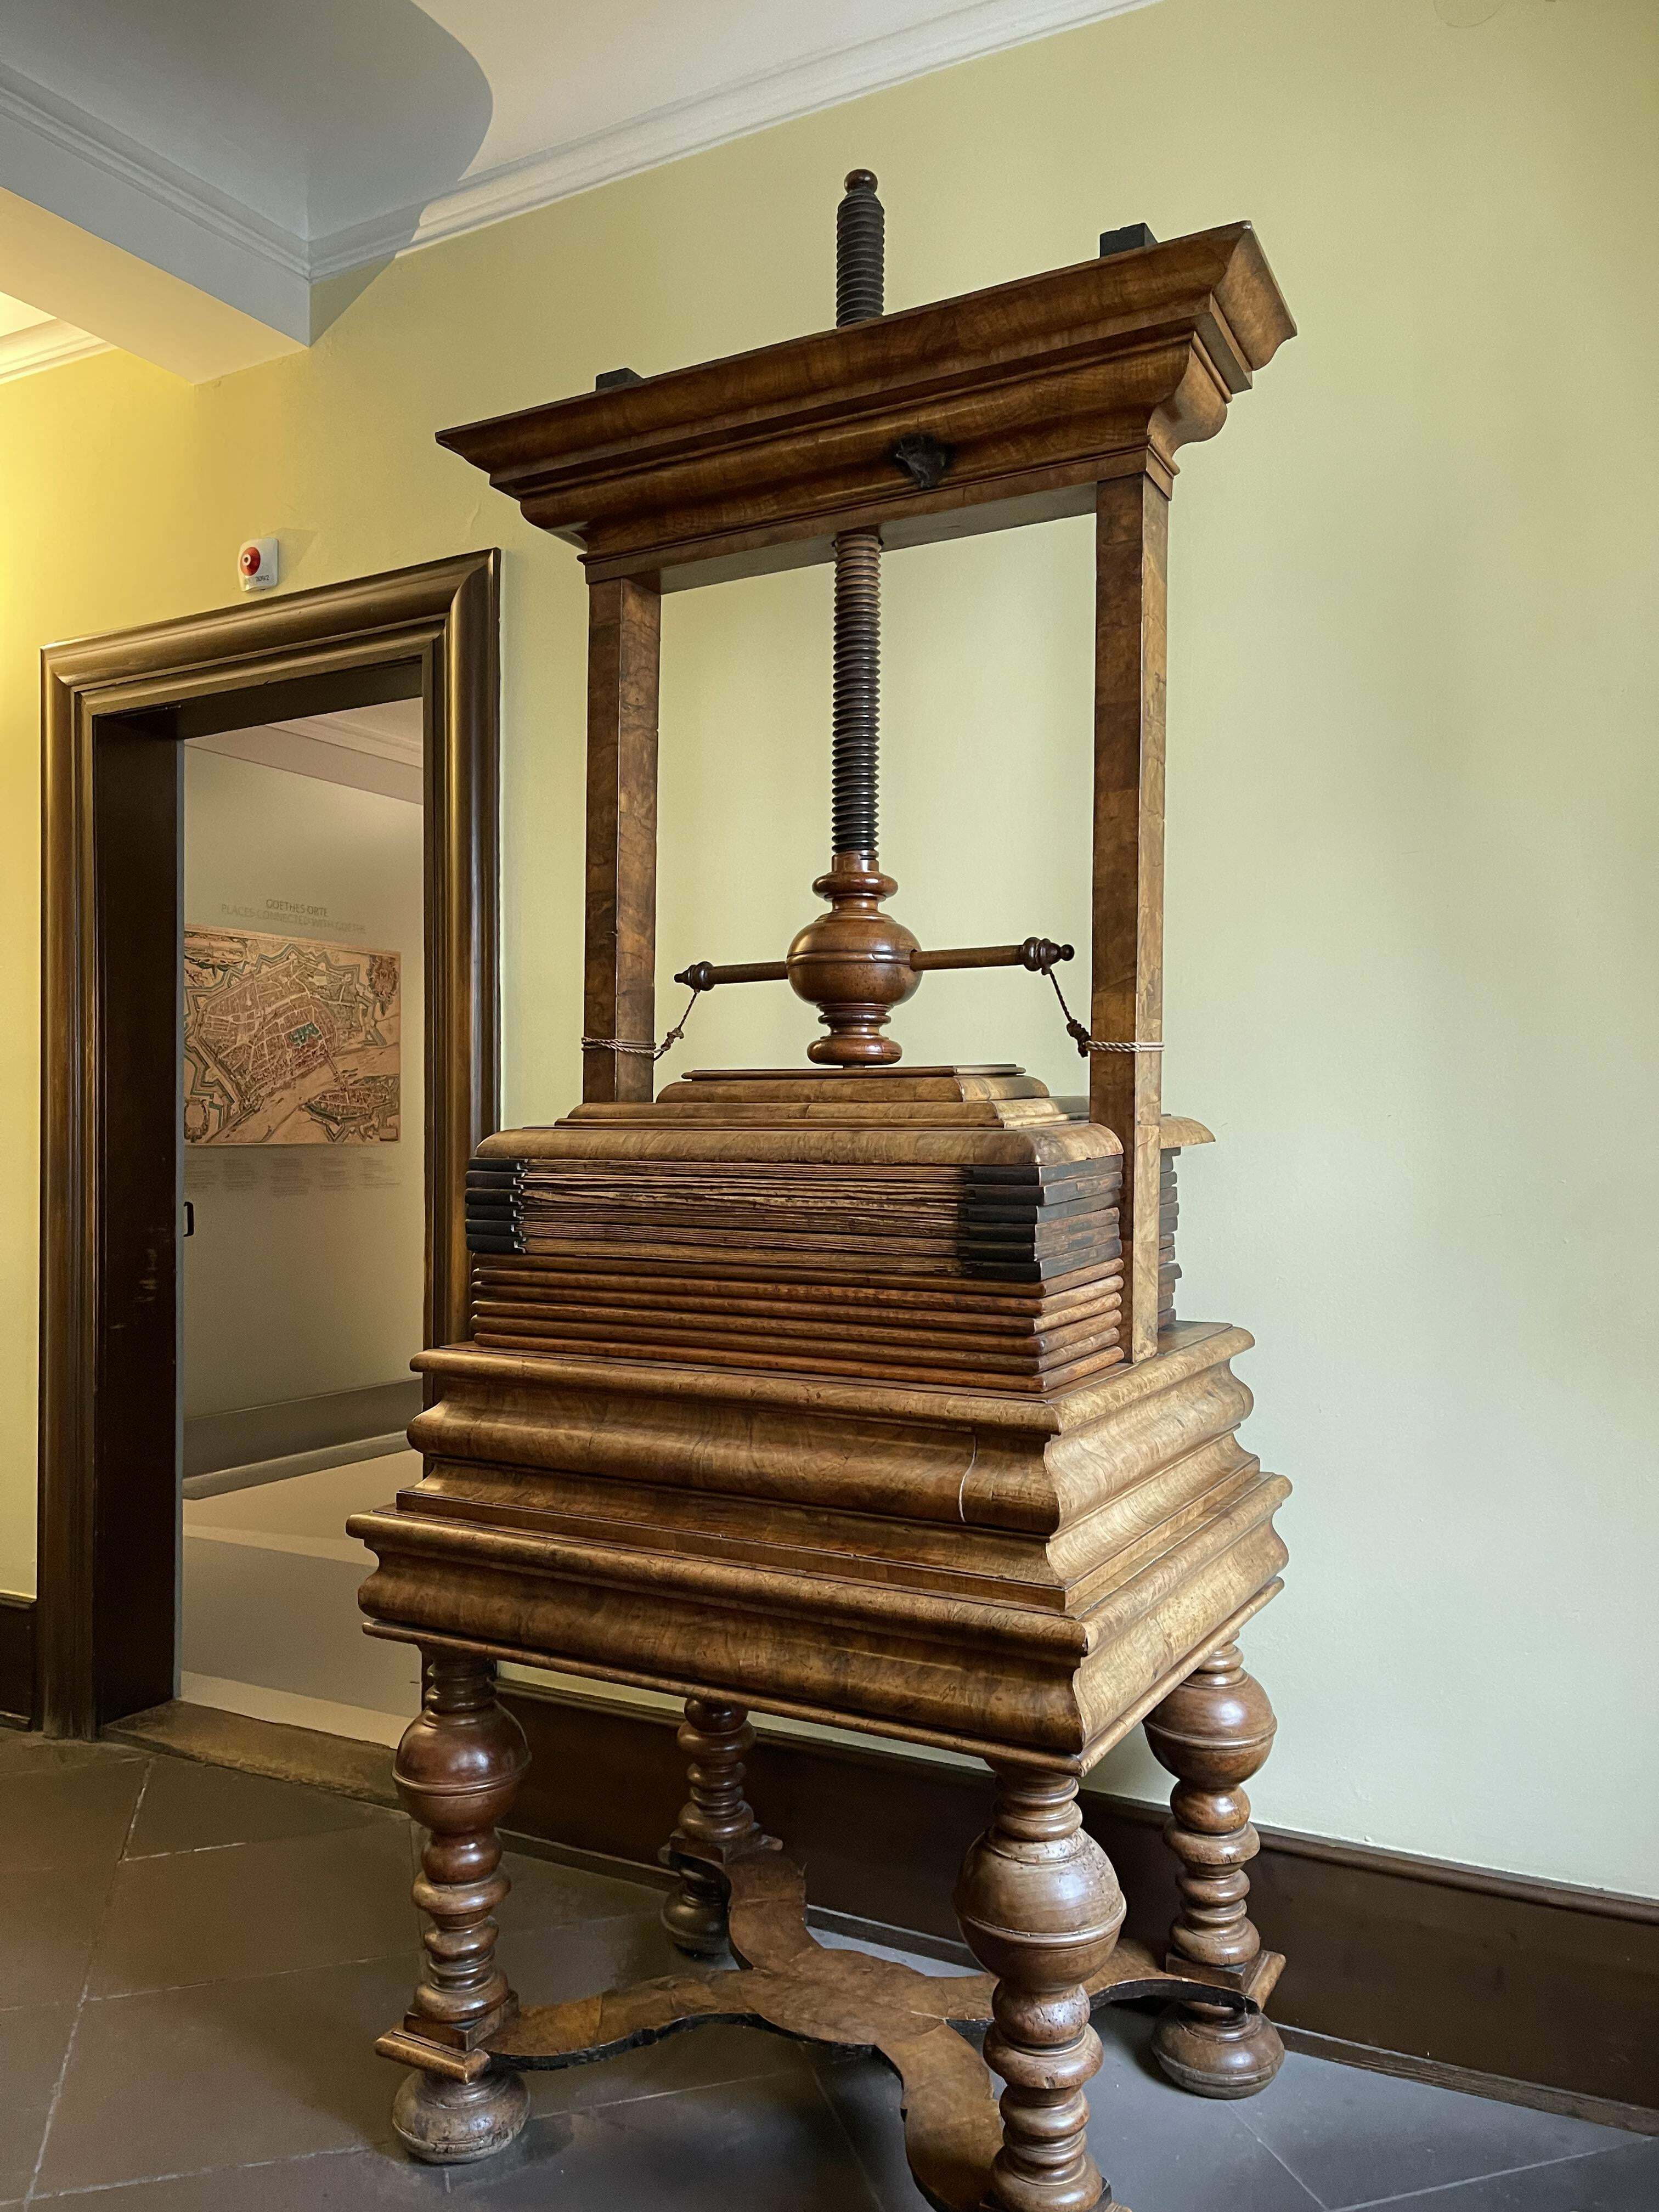 Qu'est-ce que c'est que cette chose ? Elle est en bois et mesure environ 2,5 mètres de haut, elle a été trouvée à l'intérieur de la maison de Goethe.